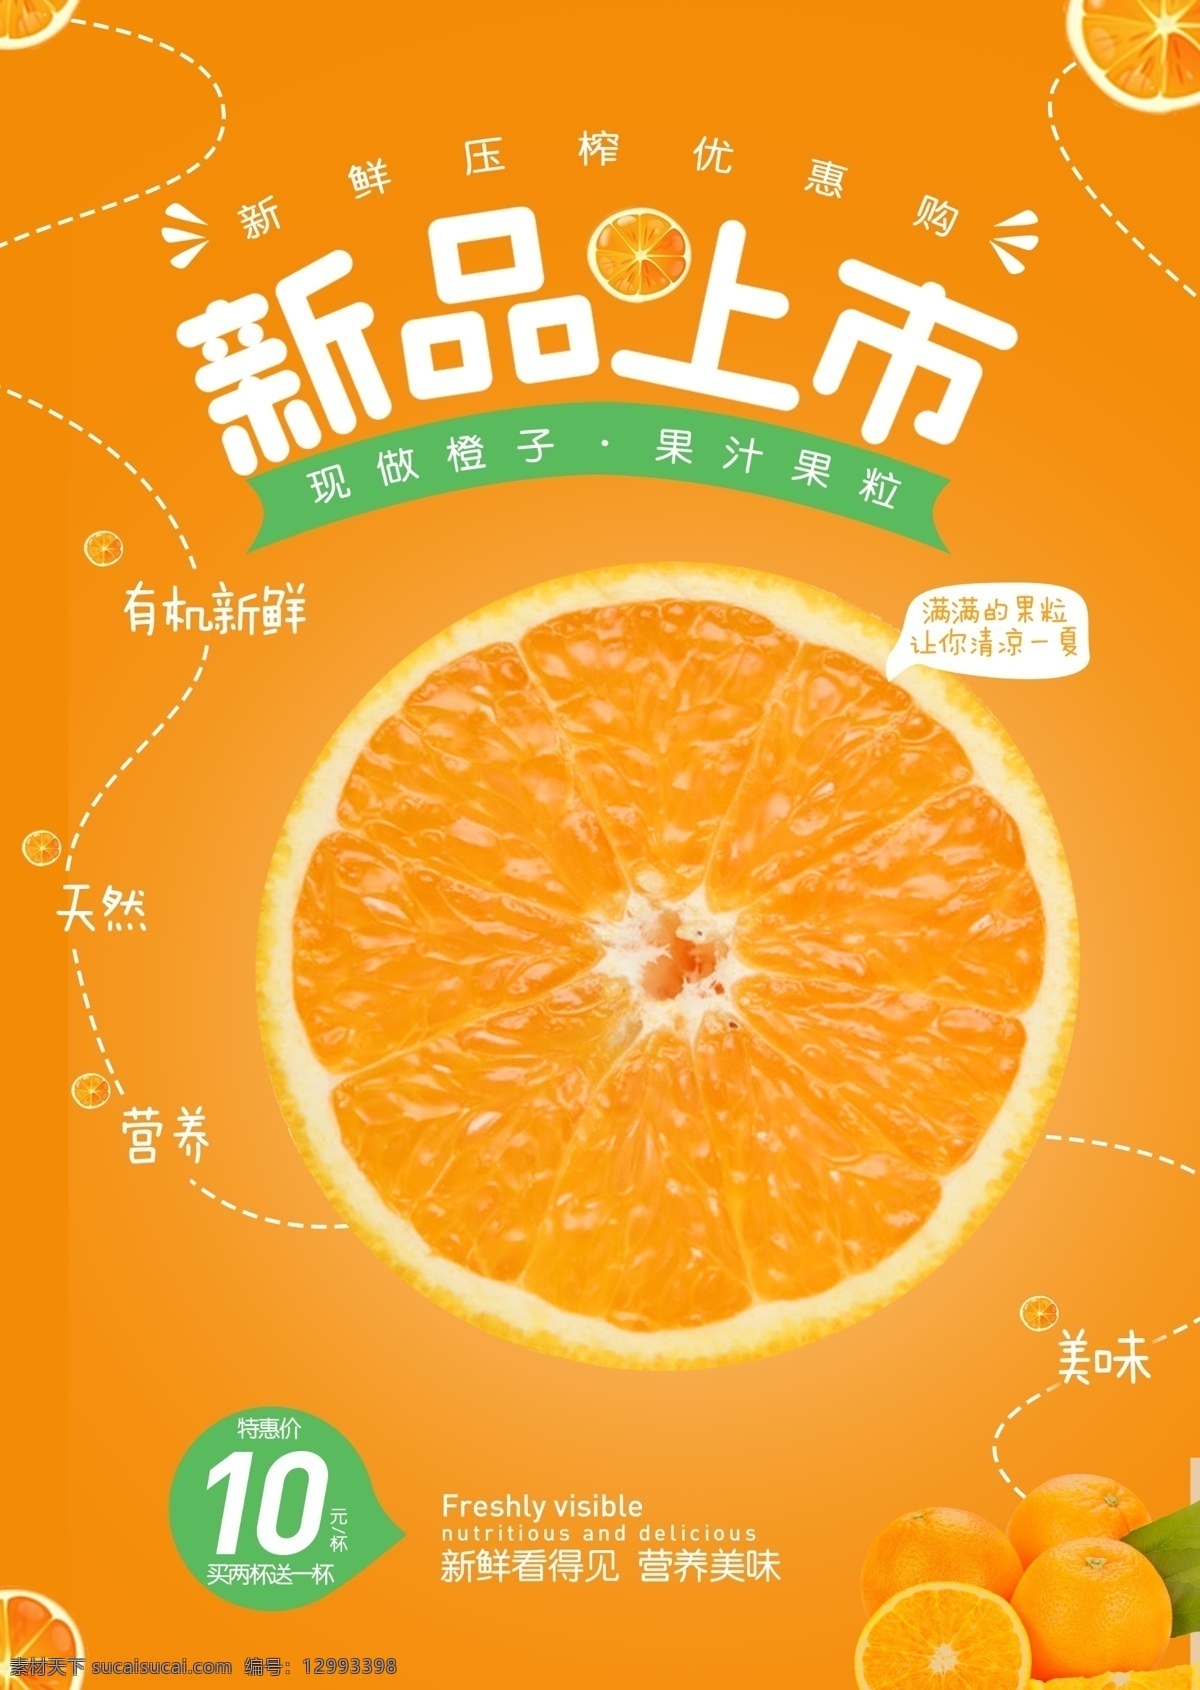 橙子图片 促销 橙子 新品 上市 橘子 黄色背景 宣传 广告